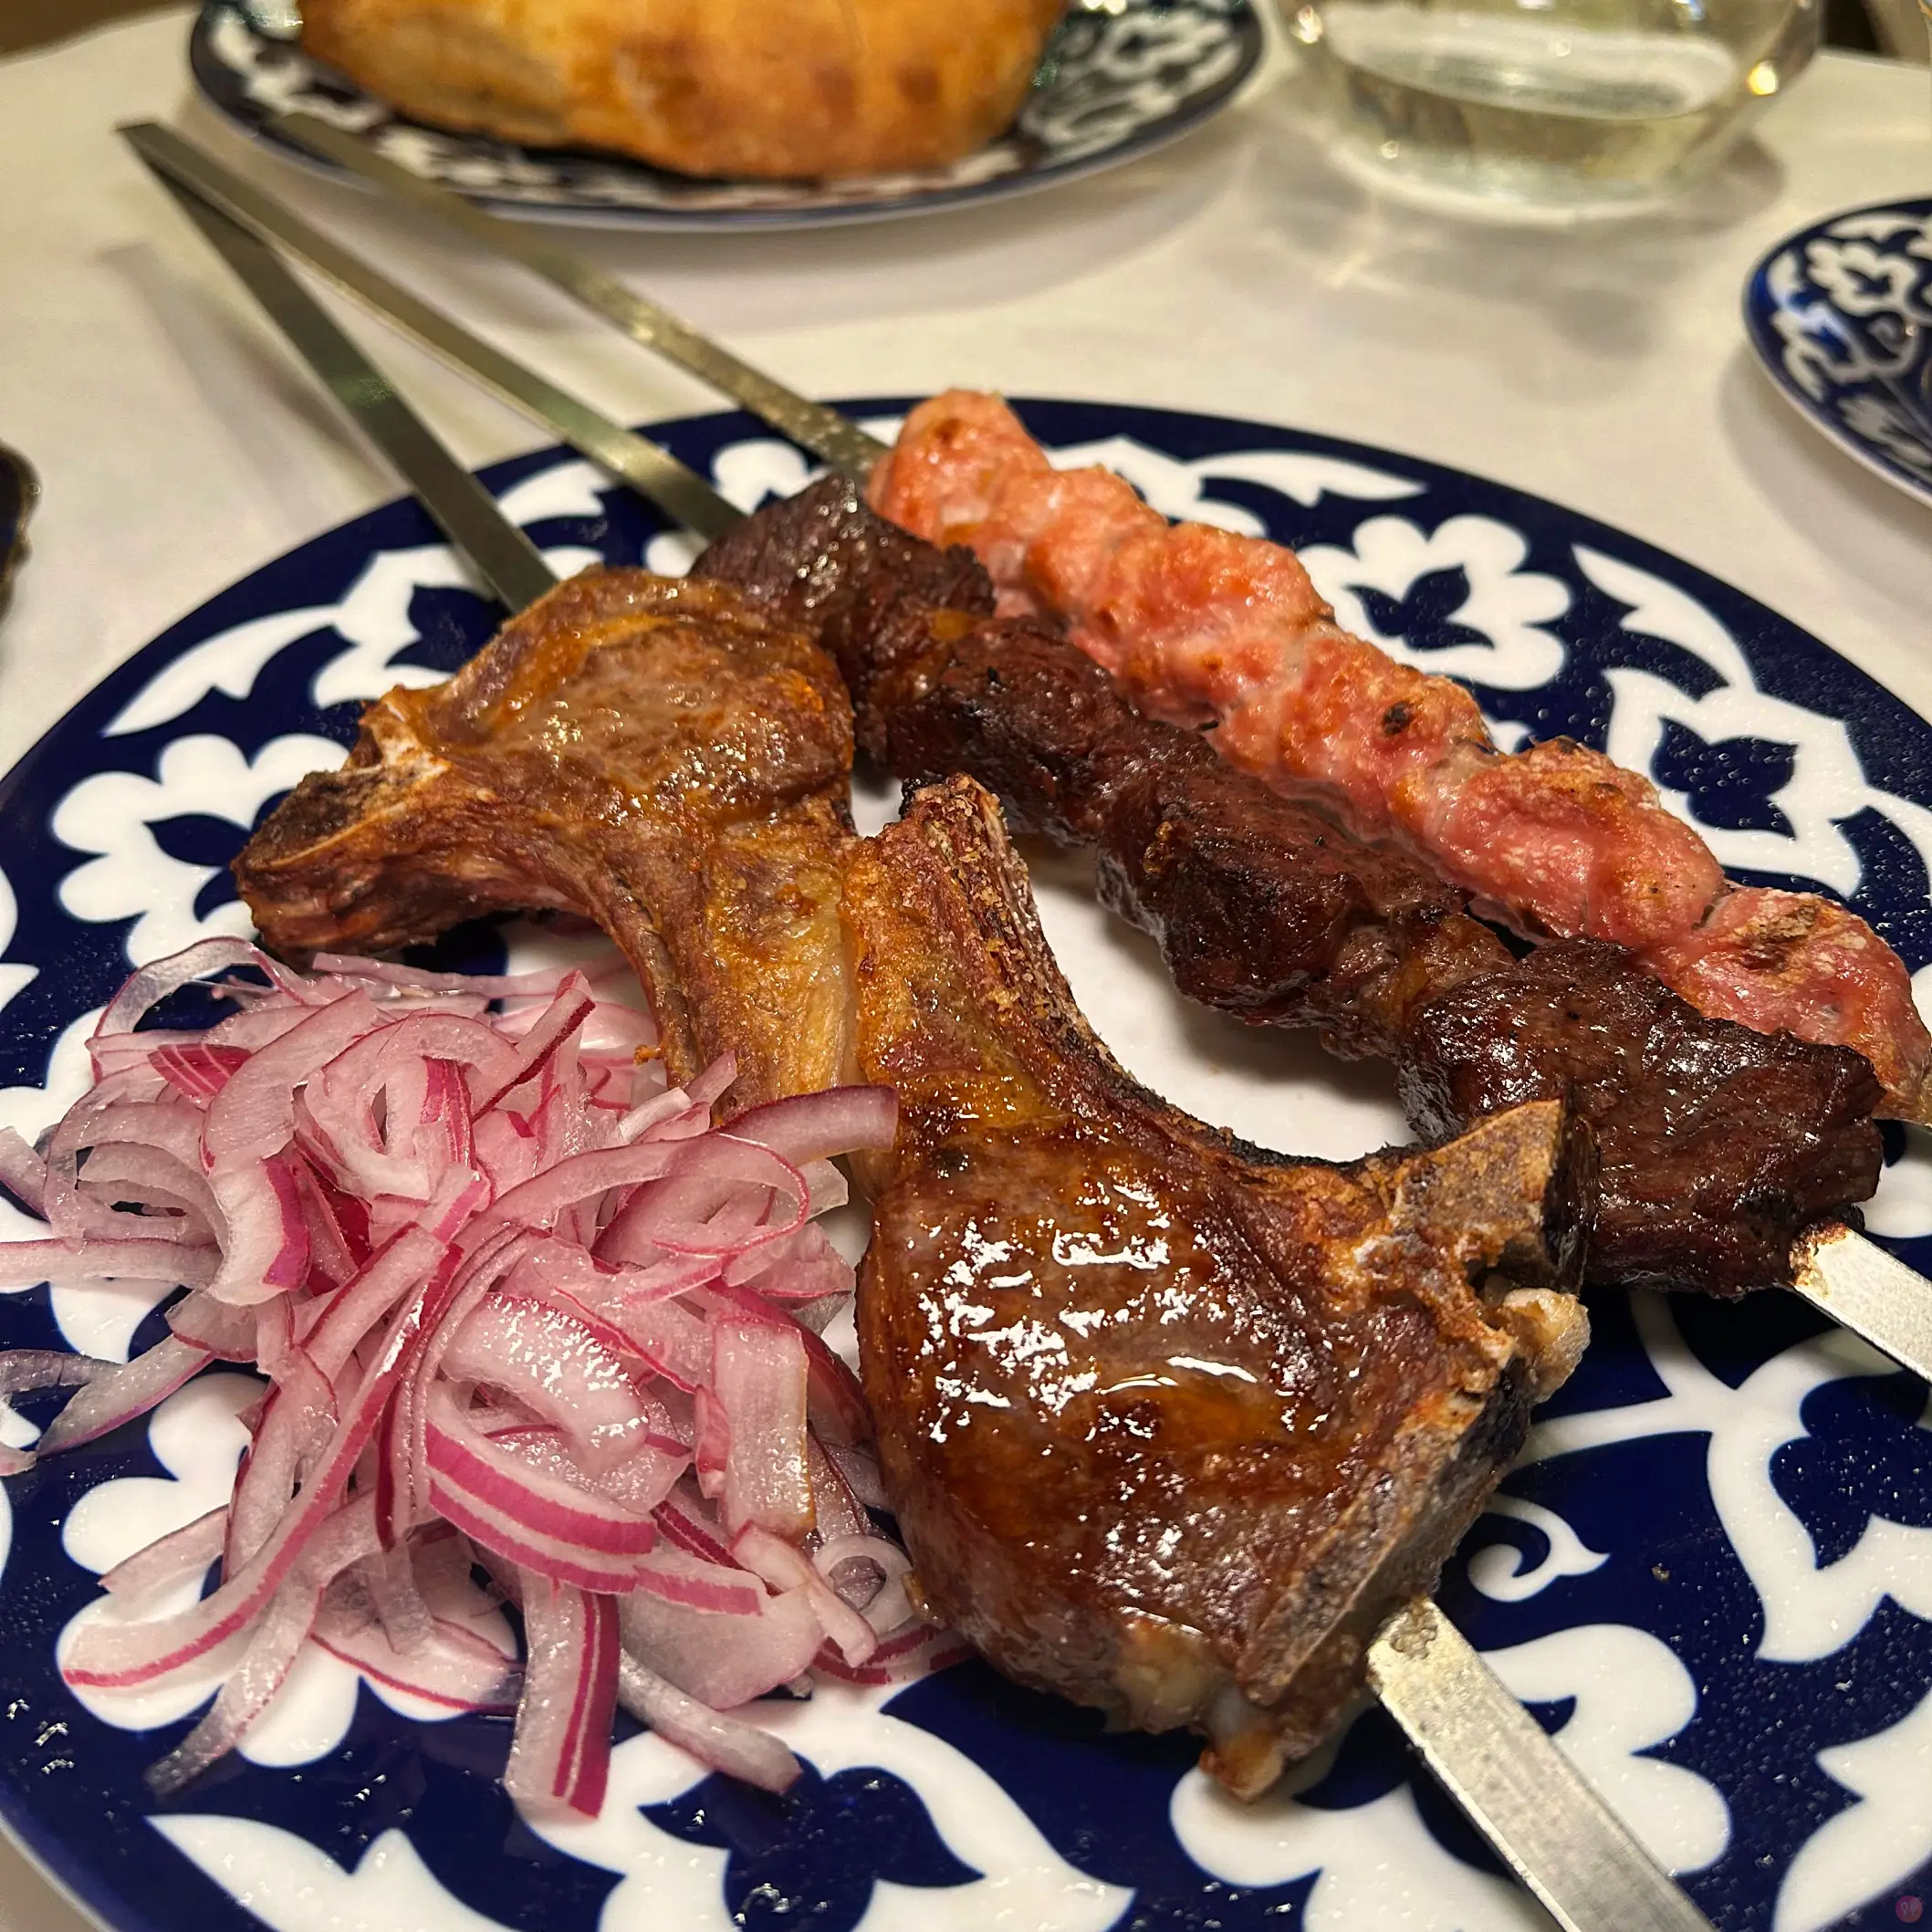 [食記] 美國紐約 Taste of Samarkand 烏茲別克菜 再訪吃別的 